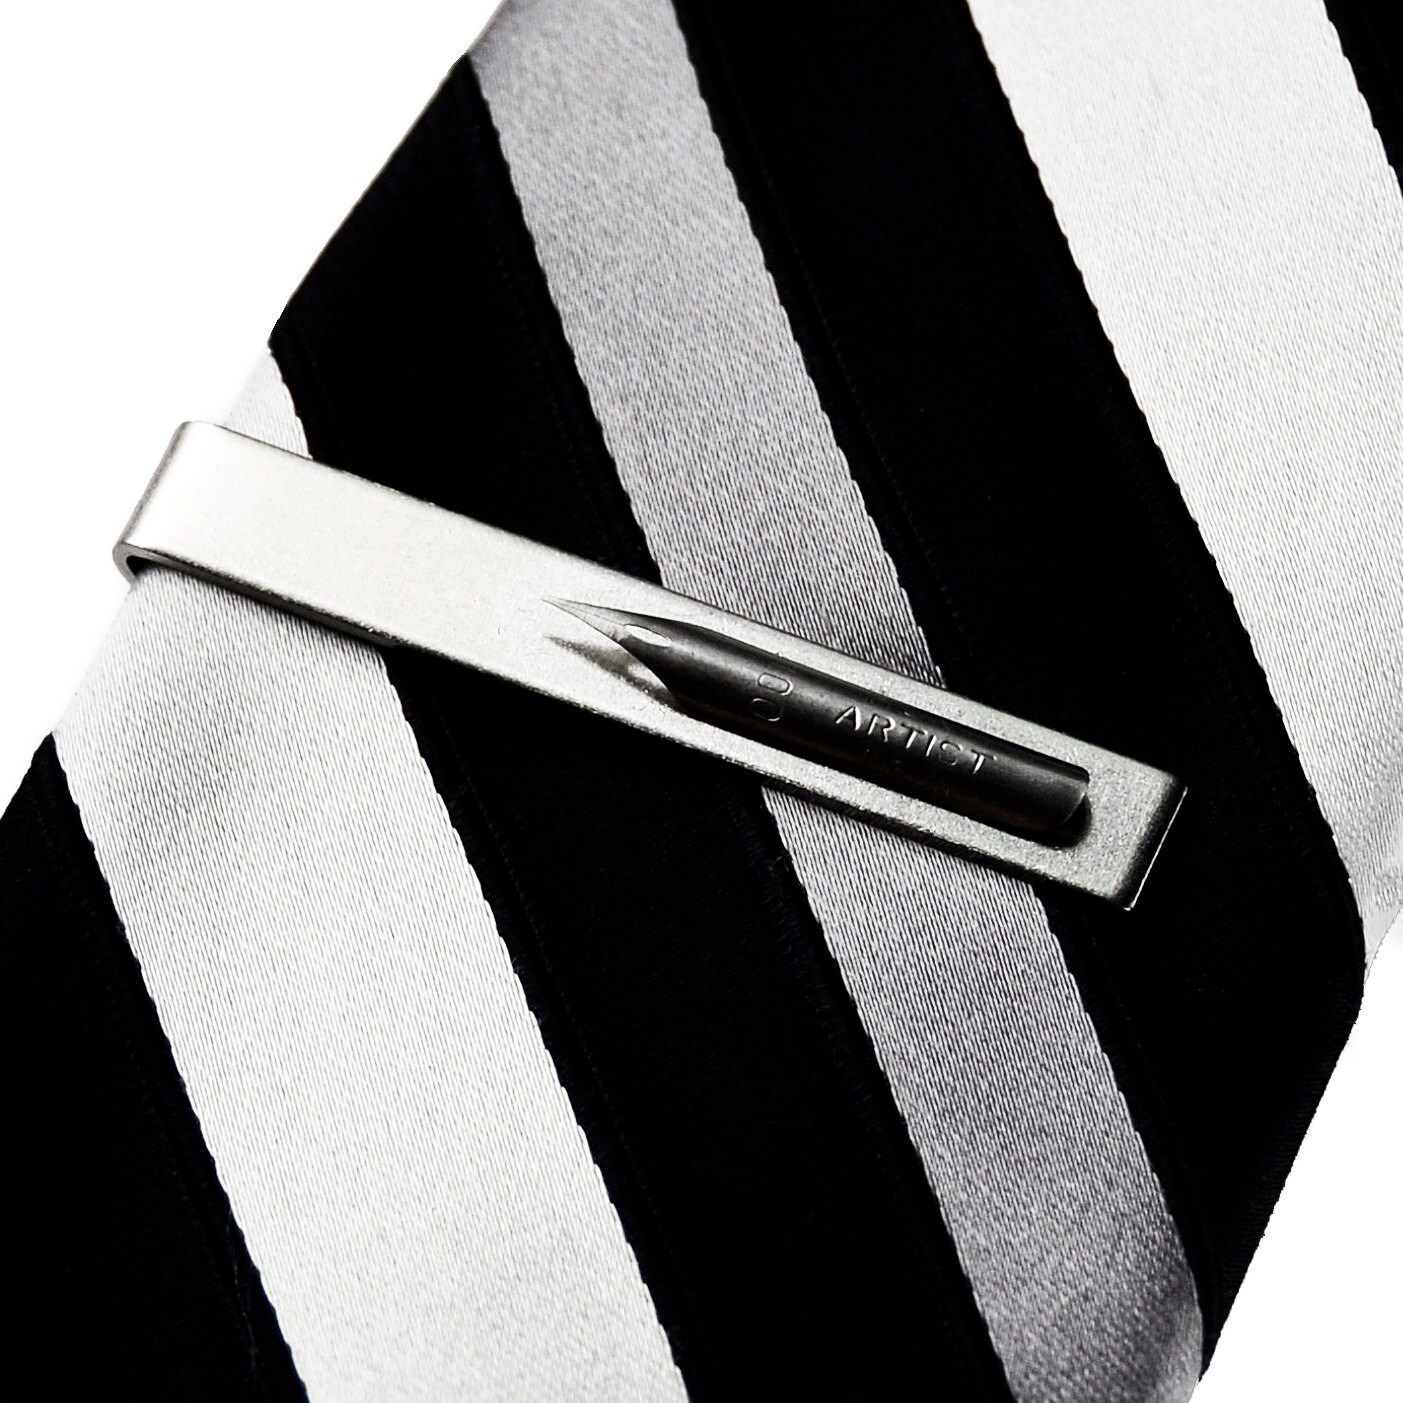 Vintage Pen Nib Tie Clip Tie Bar Tie Clasp Business Gift